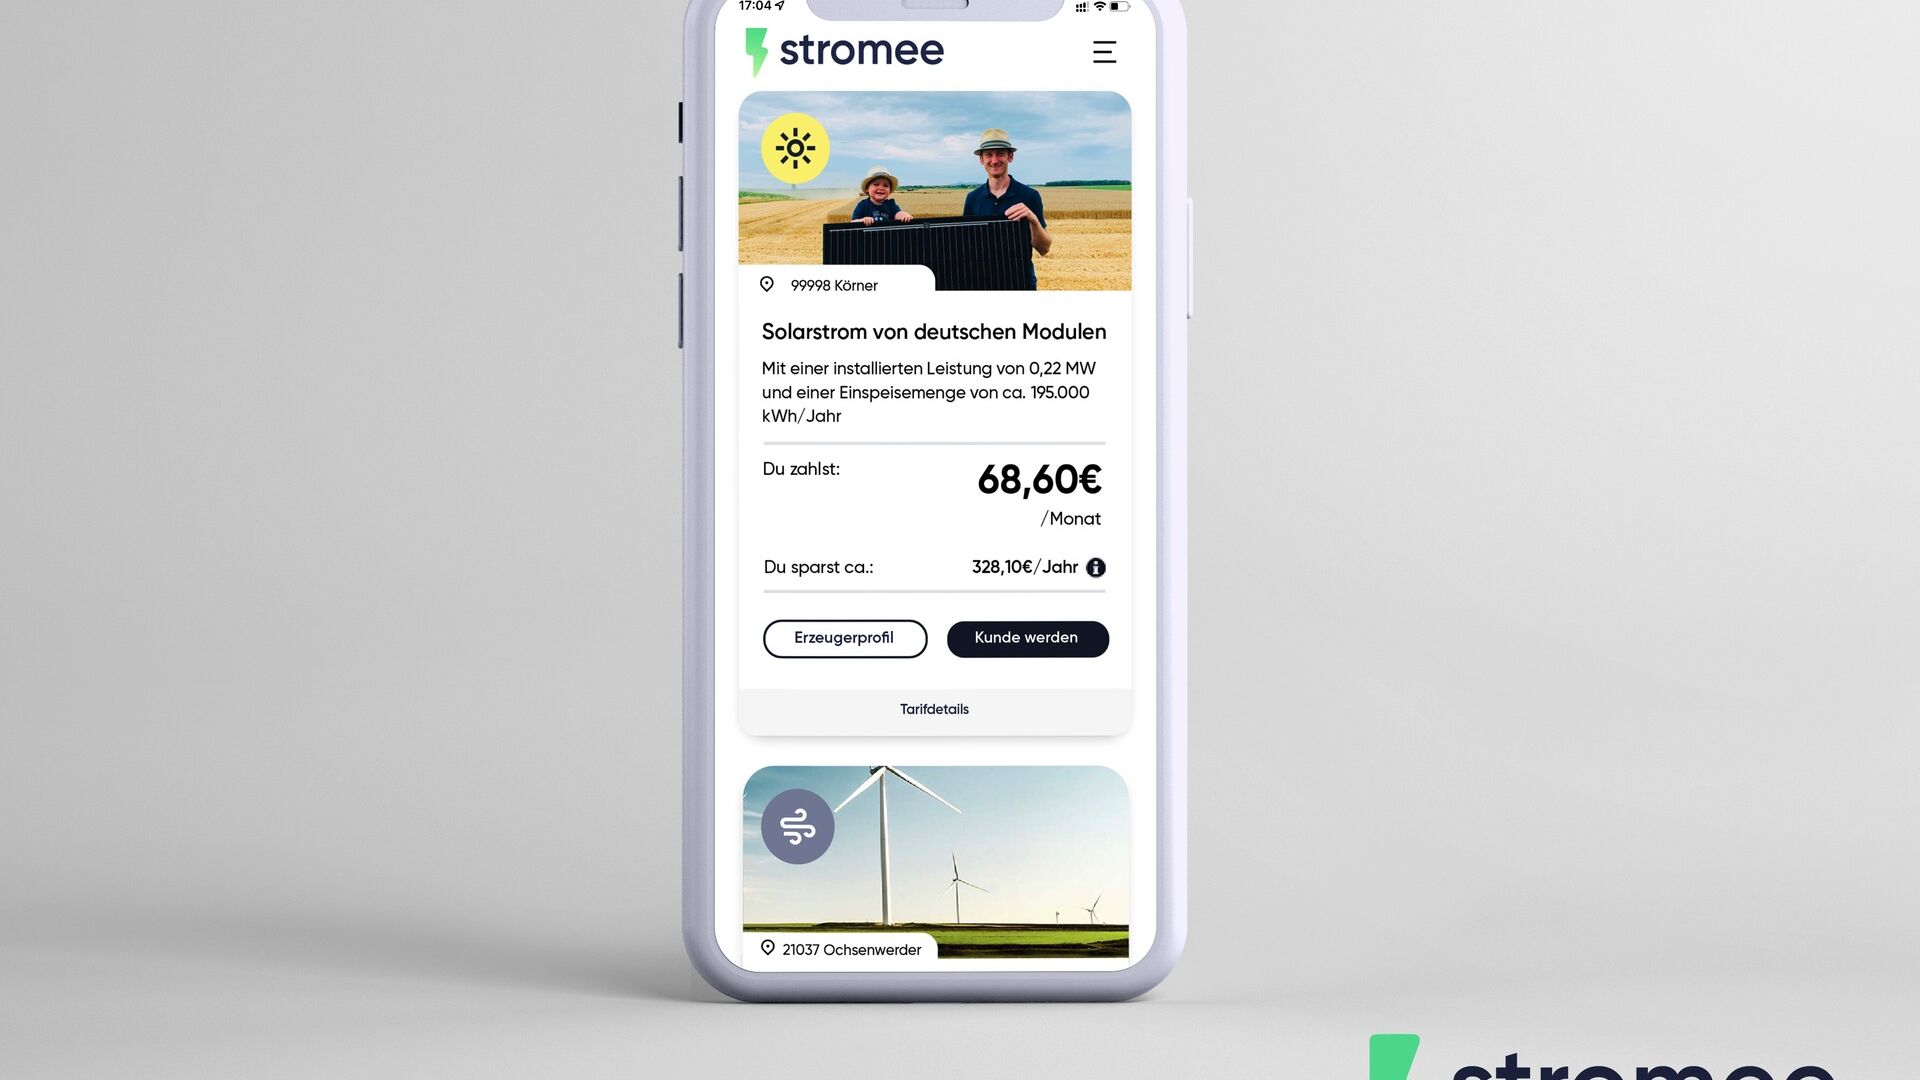 Saksa: Stromee-yrityssovellus älypuhelimessa